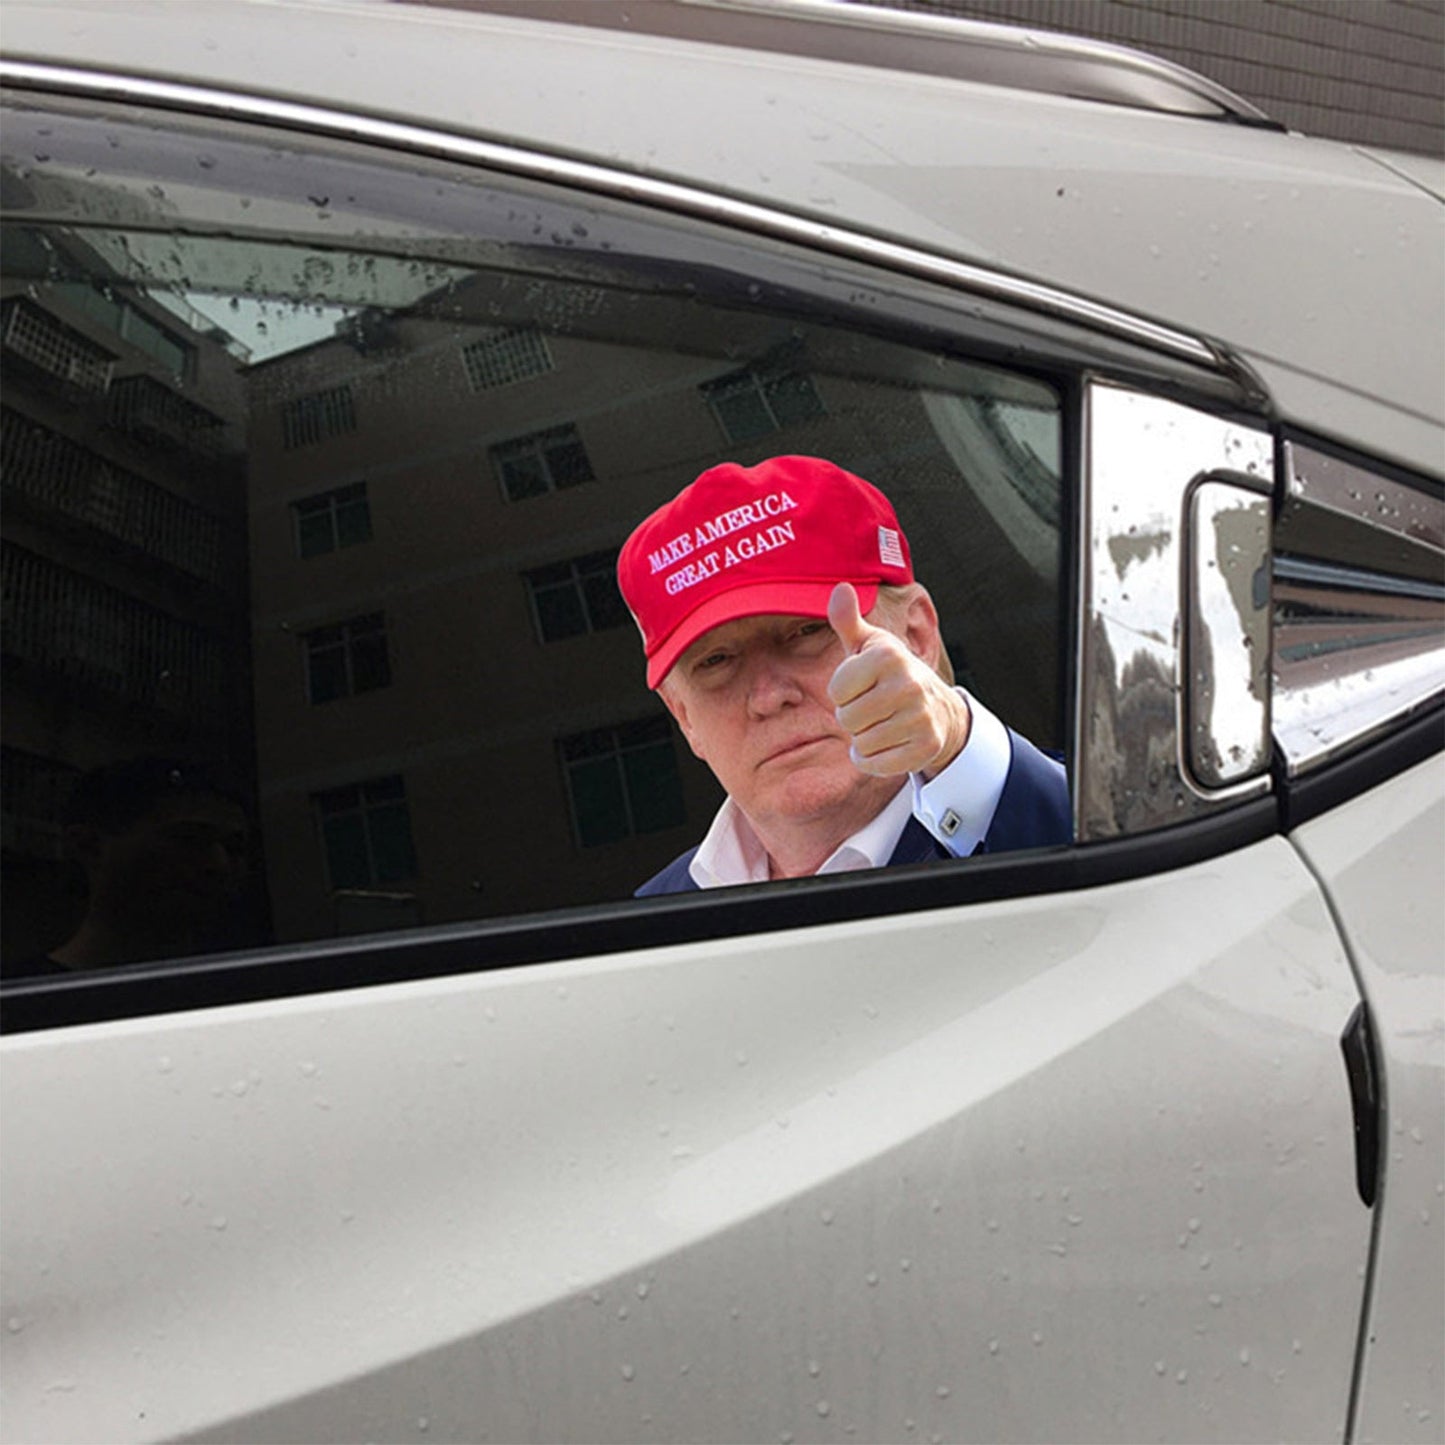 Décalcomanie de fenêtre de voiture grandeur nature Passage passager avec Trump President 2020 L